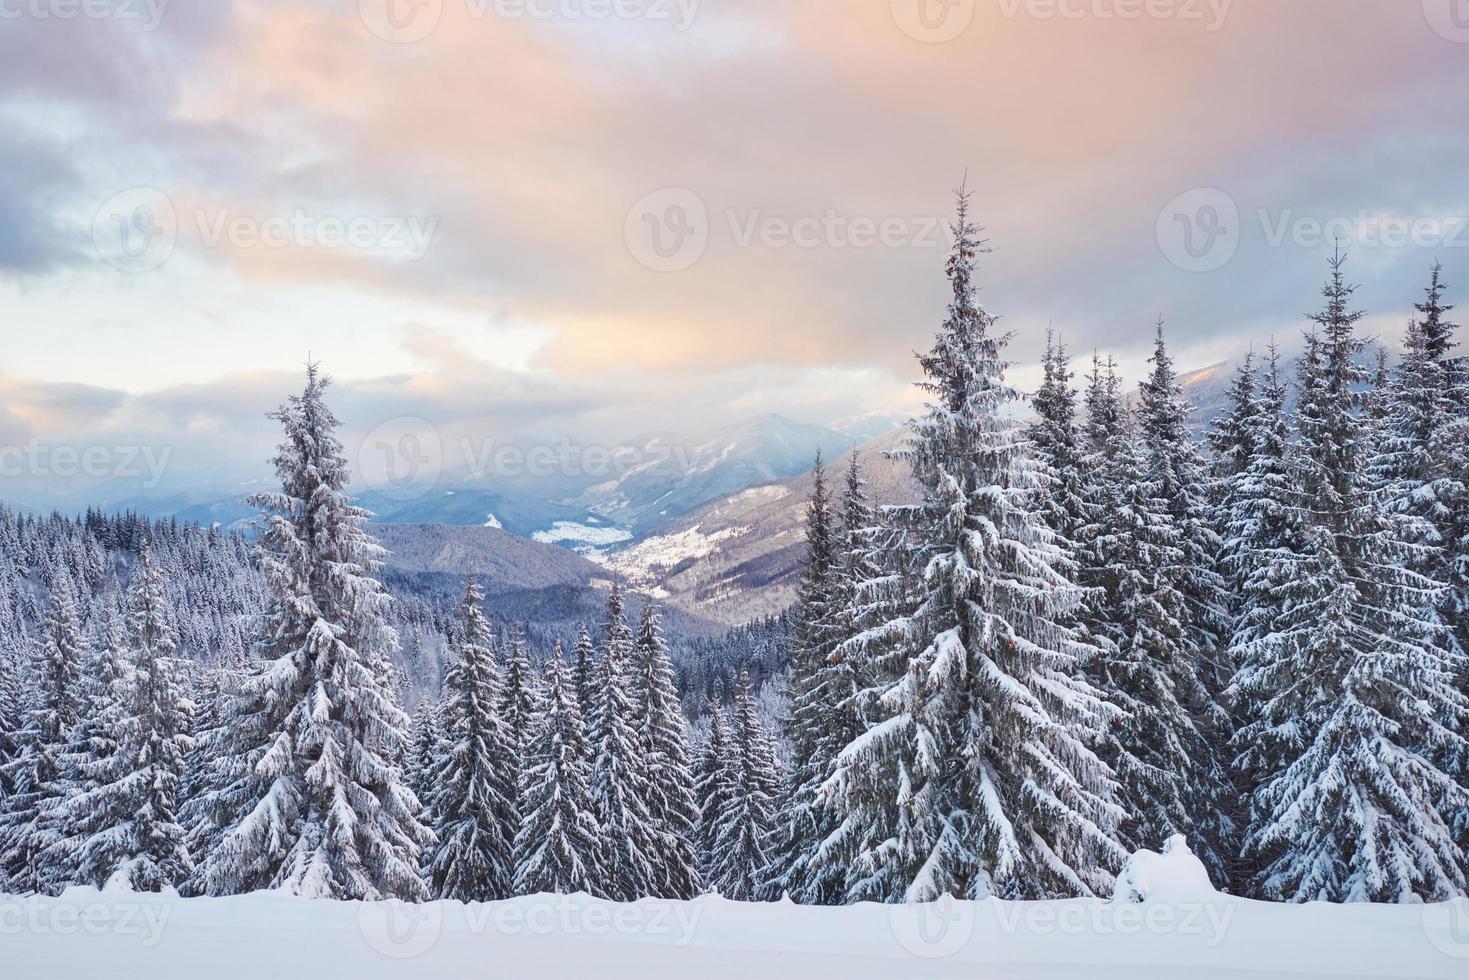 majestätiska vita granar som lyser av solljus. pittoresk och vacker vinterscen. plats plats karpaterna nationalpark, ukraina, europa. skidorten alperna foto